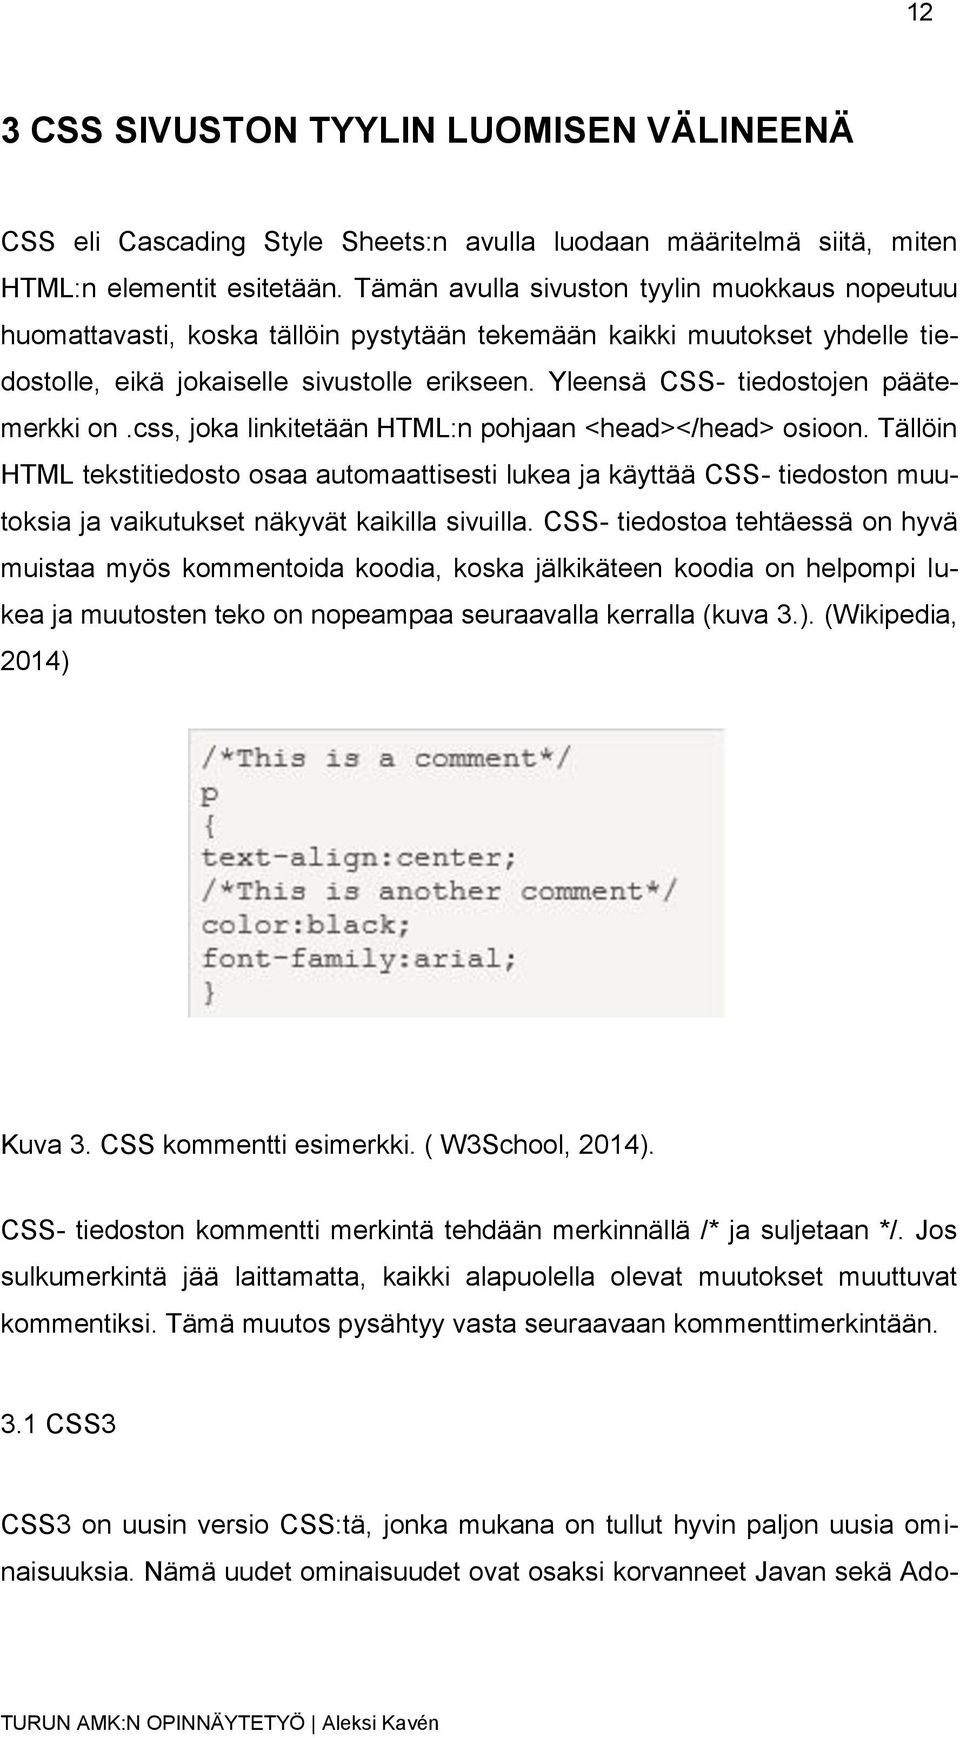 Yleensä CSS- tiedostojen päätemerkki on.css, joka linkitetään HTML:n pohjaan <head></head> osioon.